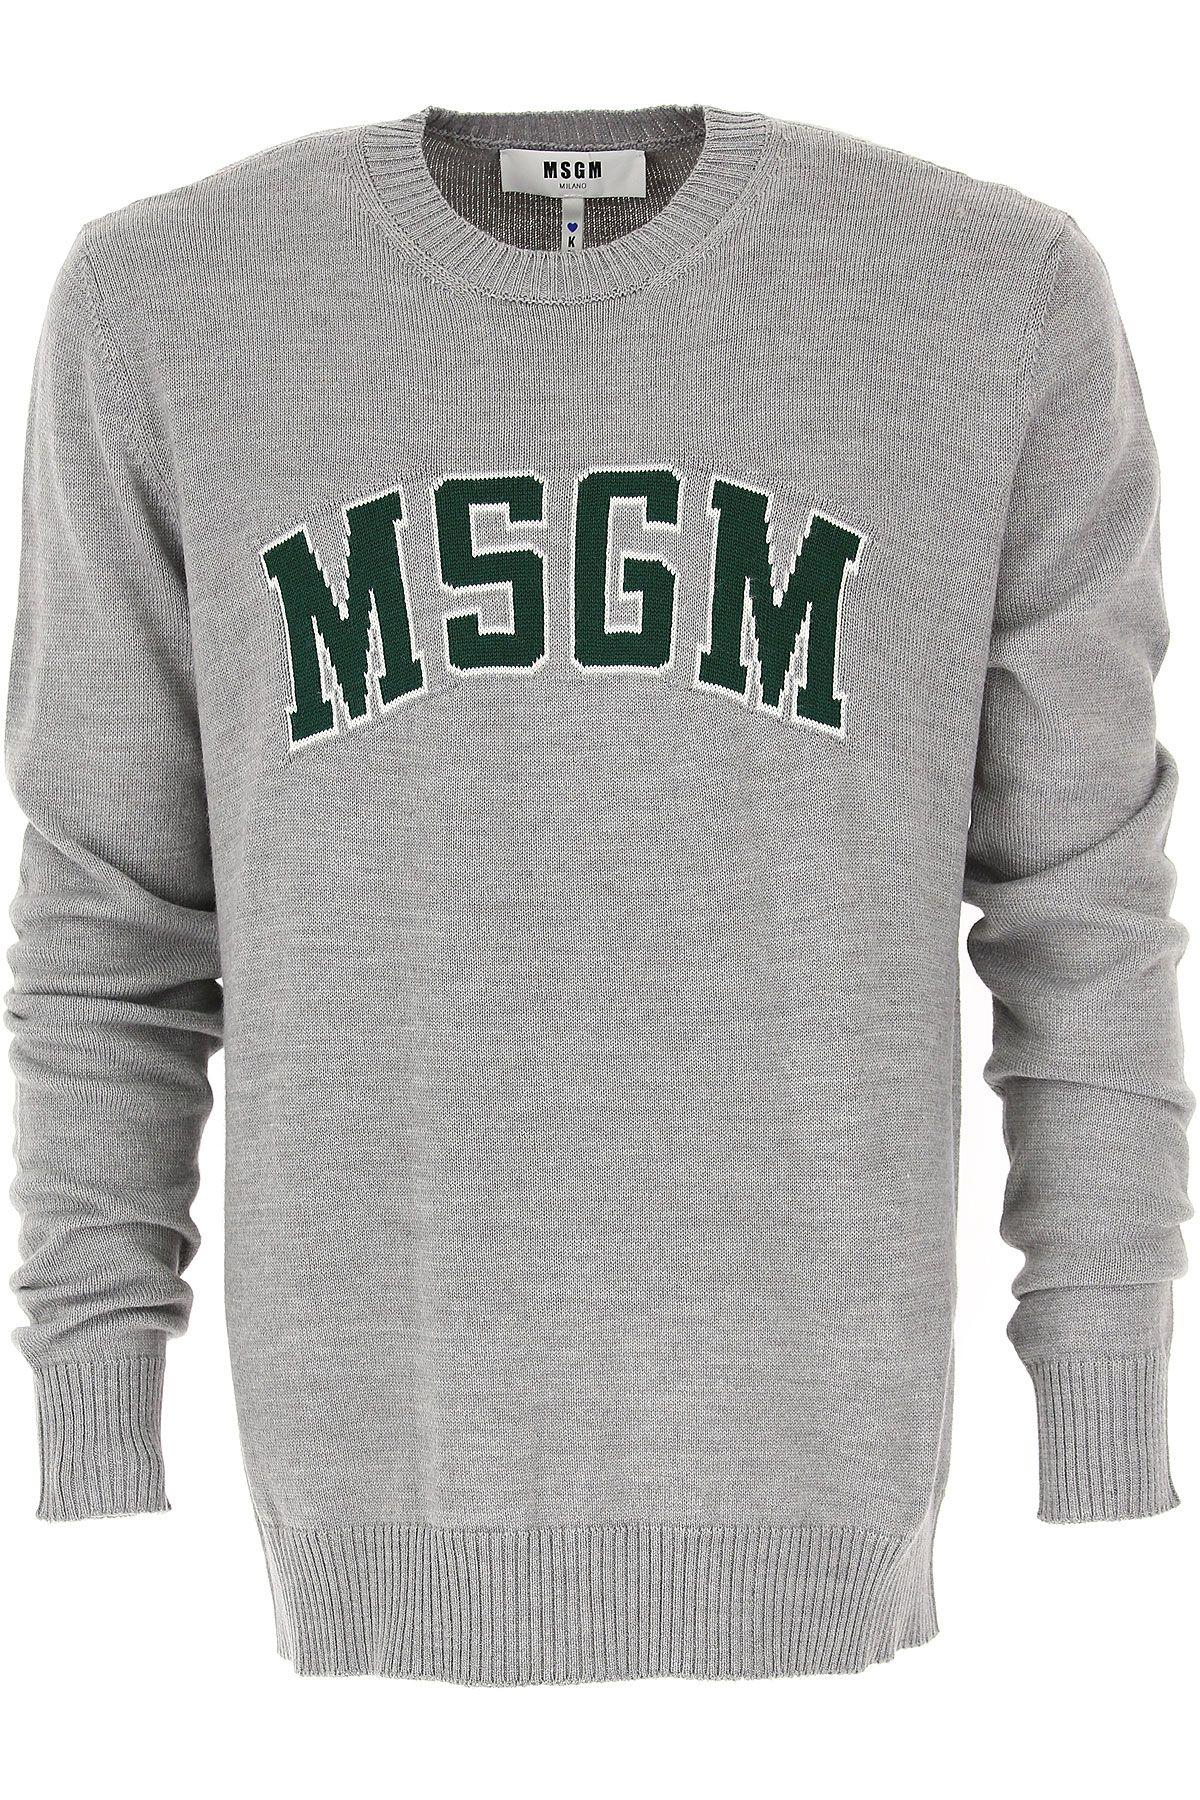 Light Grey Logo - MSGM Clothing for Men Fall - Winter 2018/19 Light Grey Logo on Chest ...